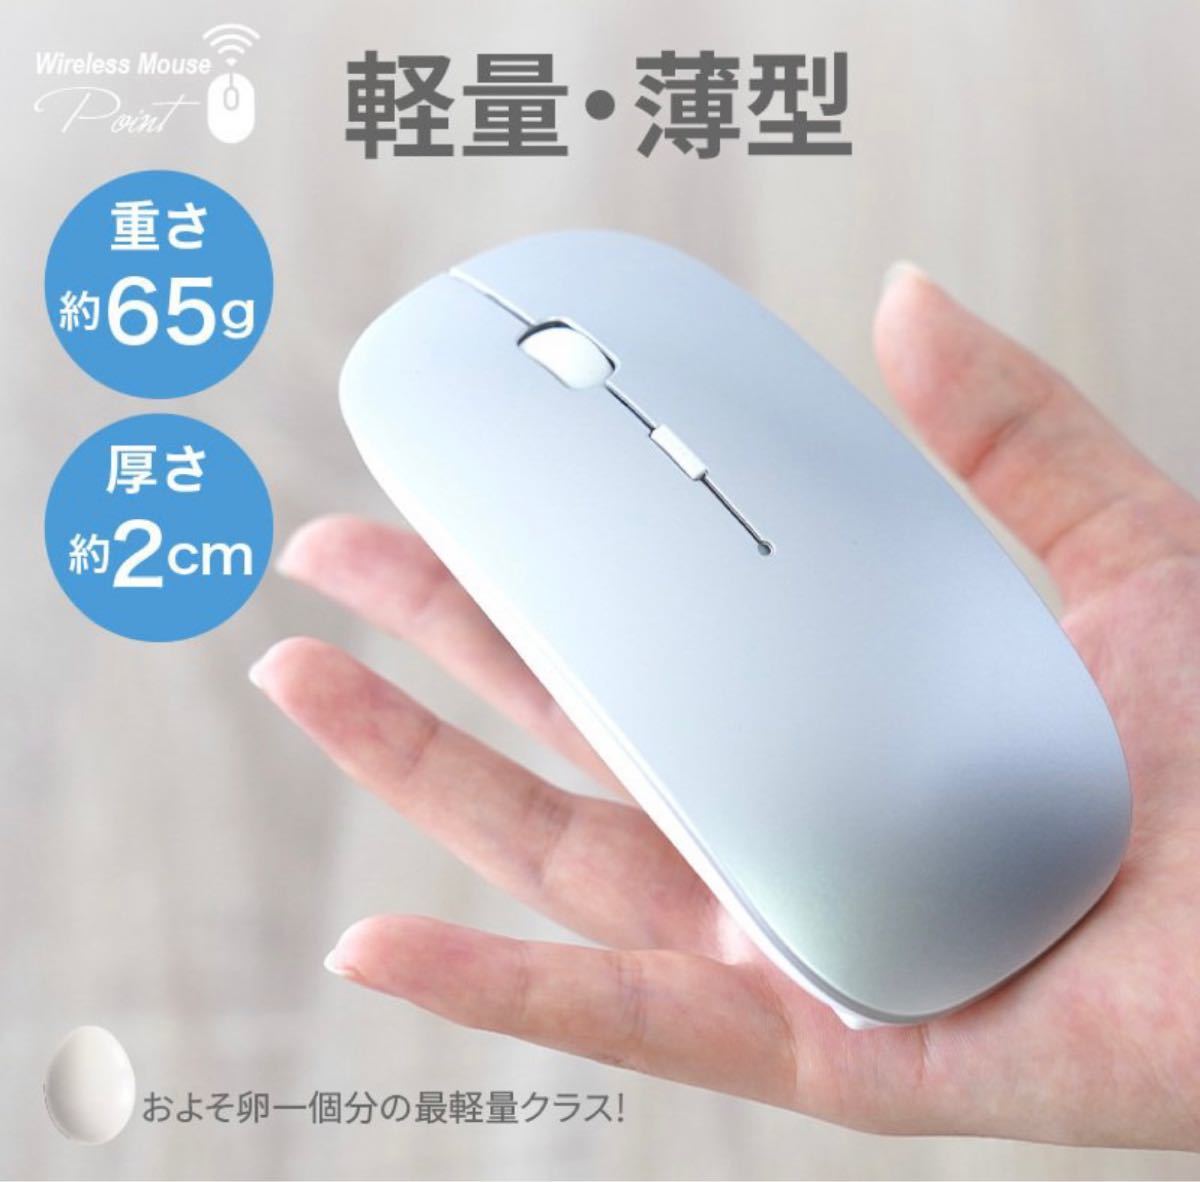 ホワイト ワイヤレスマウス 静音 無線マウス 薄型 充電式